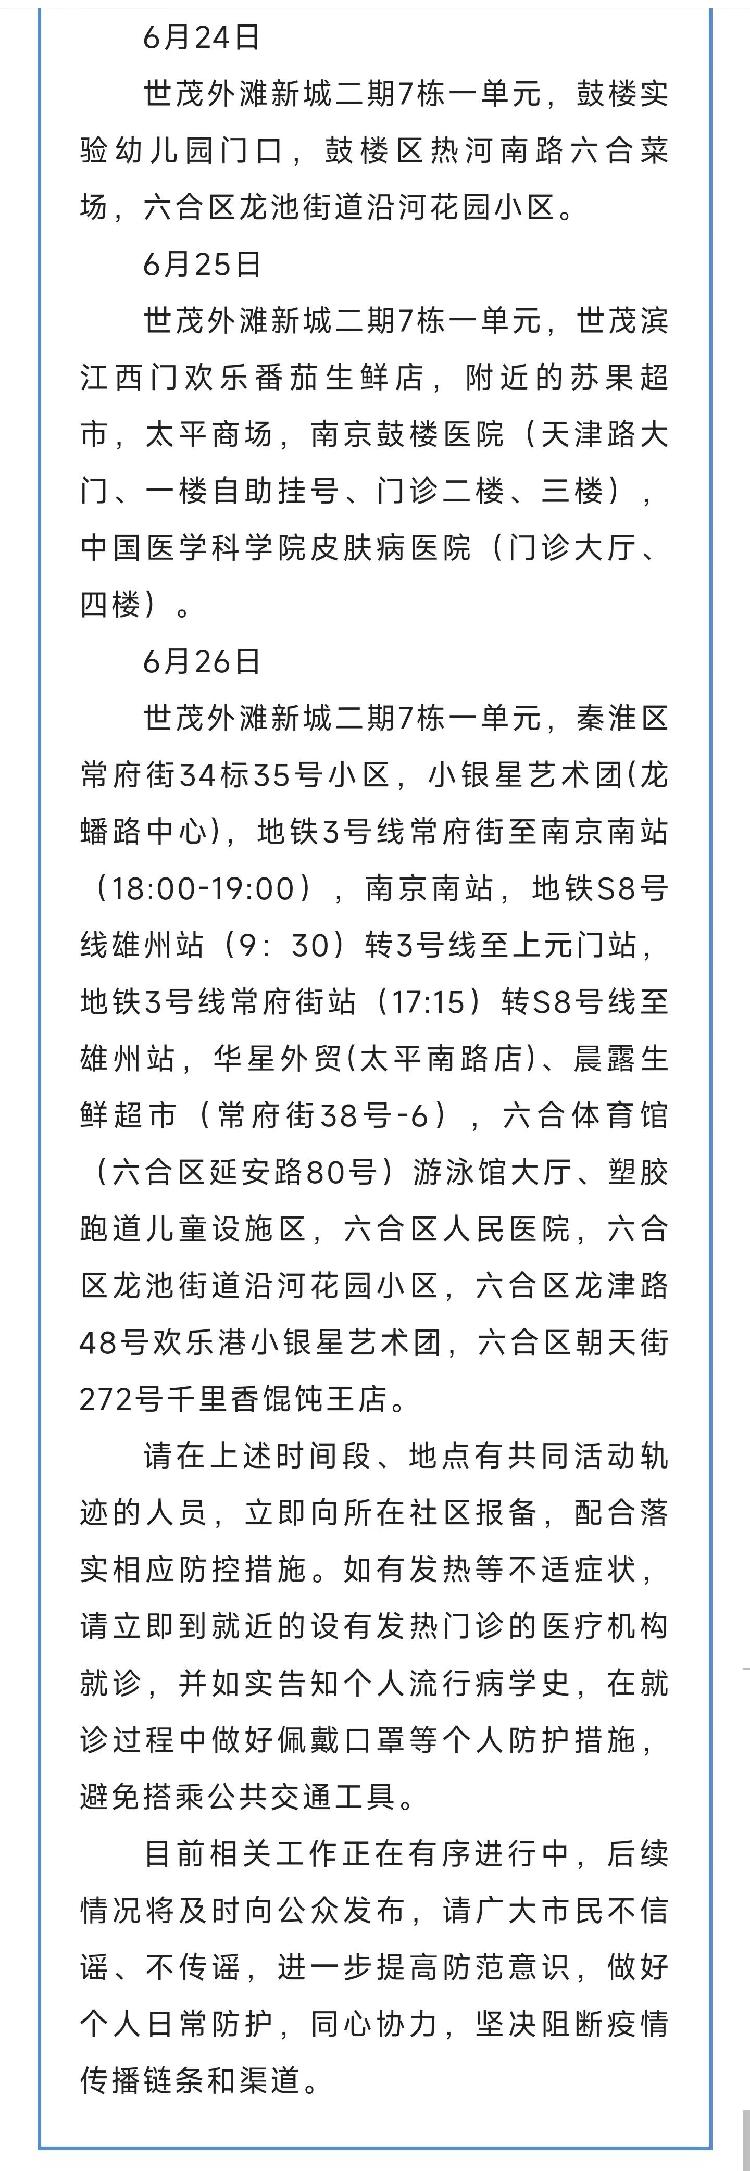 江苏南京发现4名密切接触者核酸检测结果异常